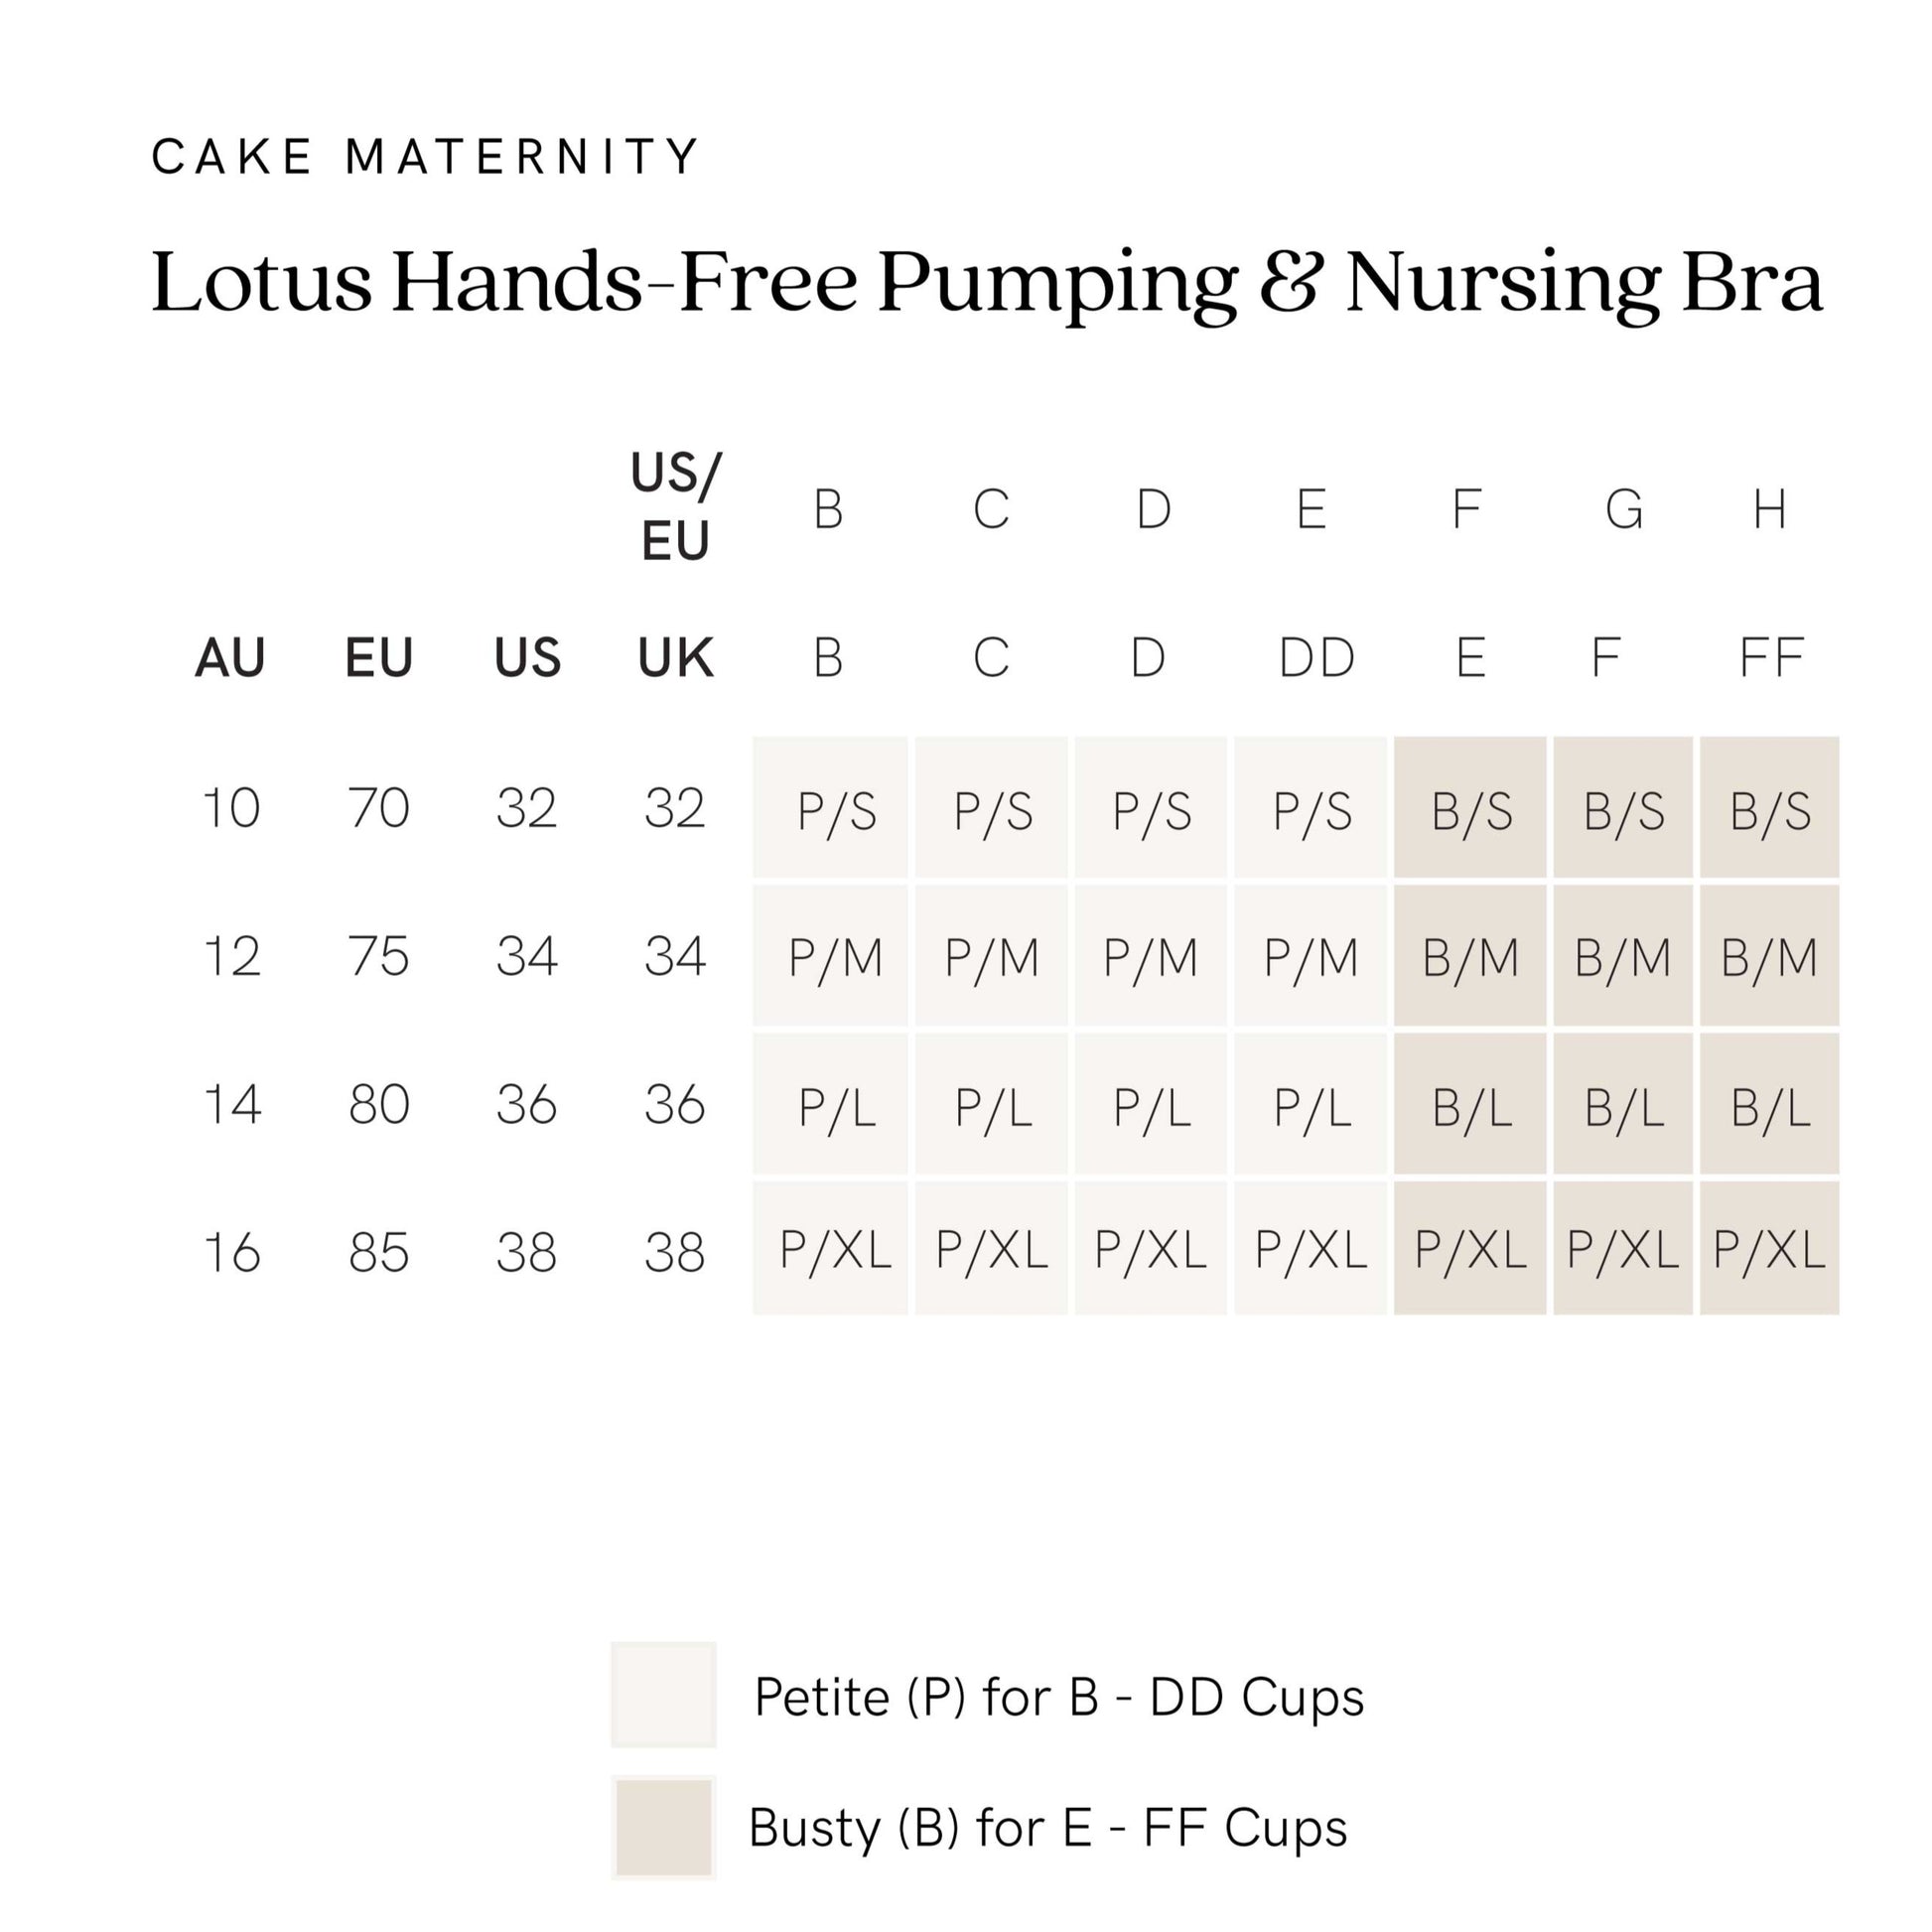 Lotus Hands-free Pumping & Nursing Bra